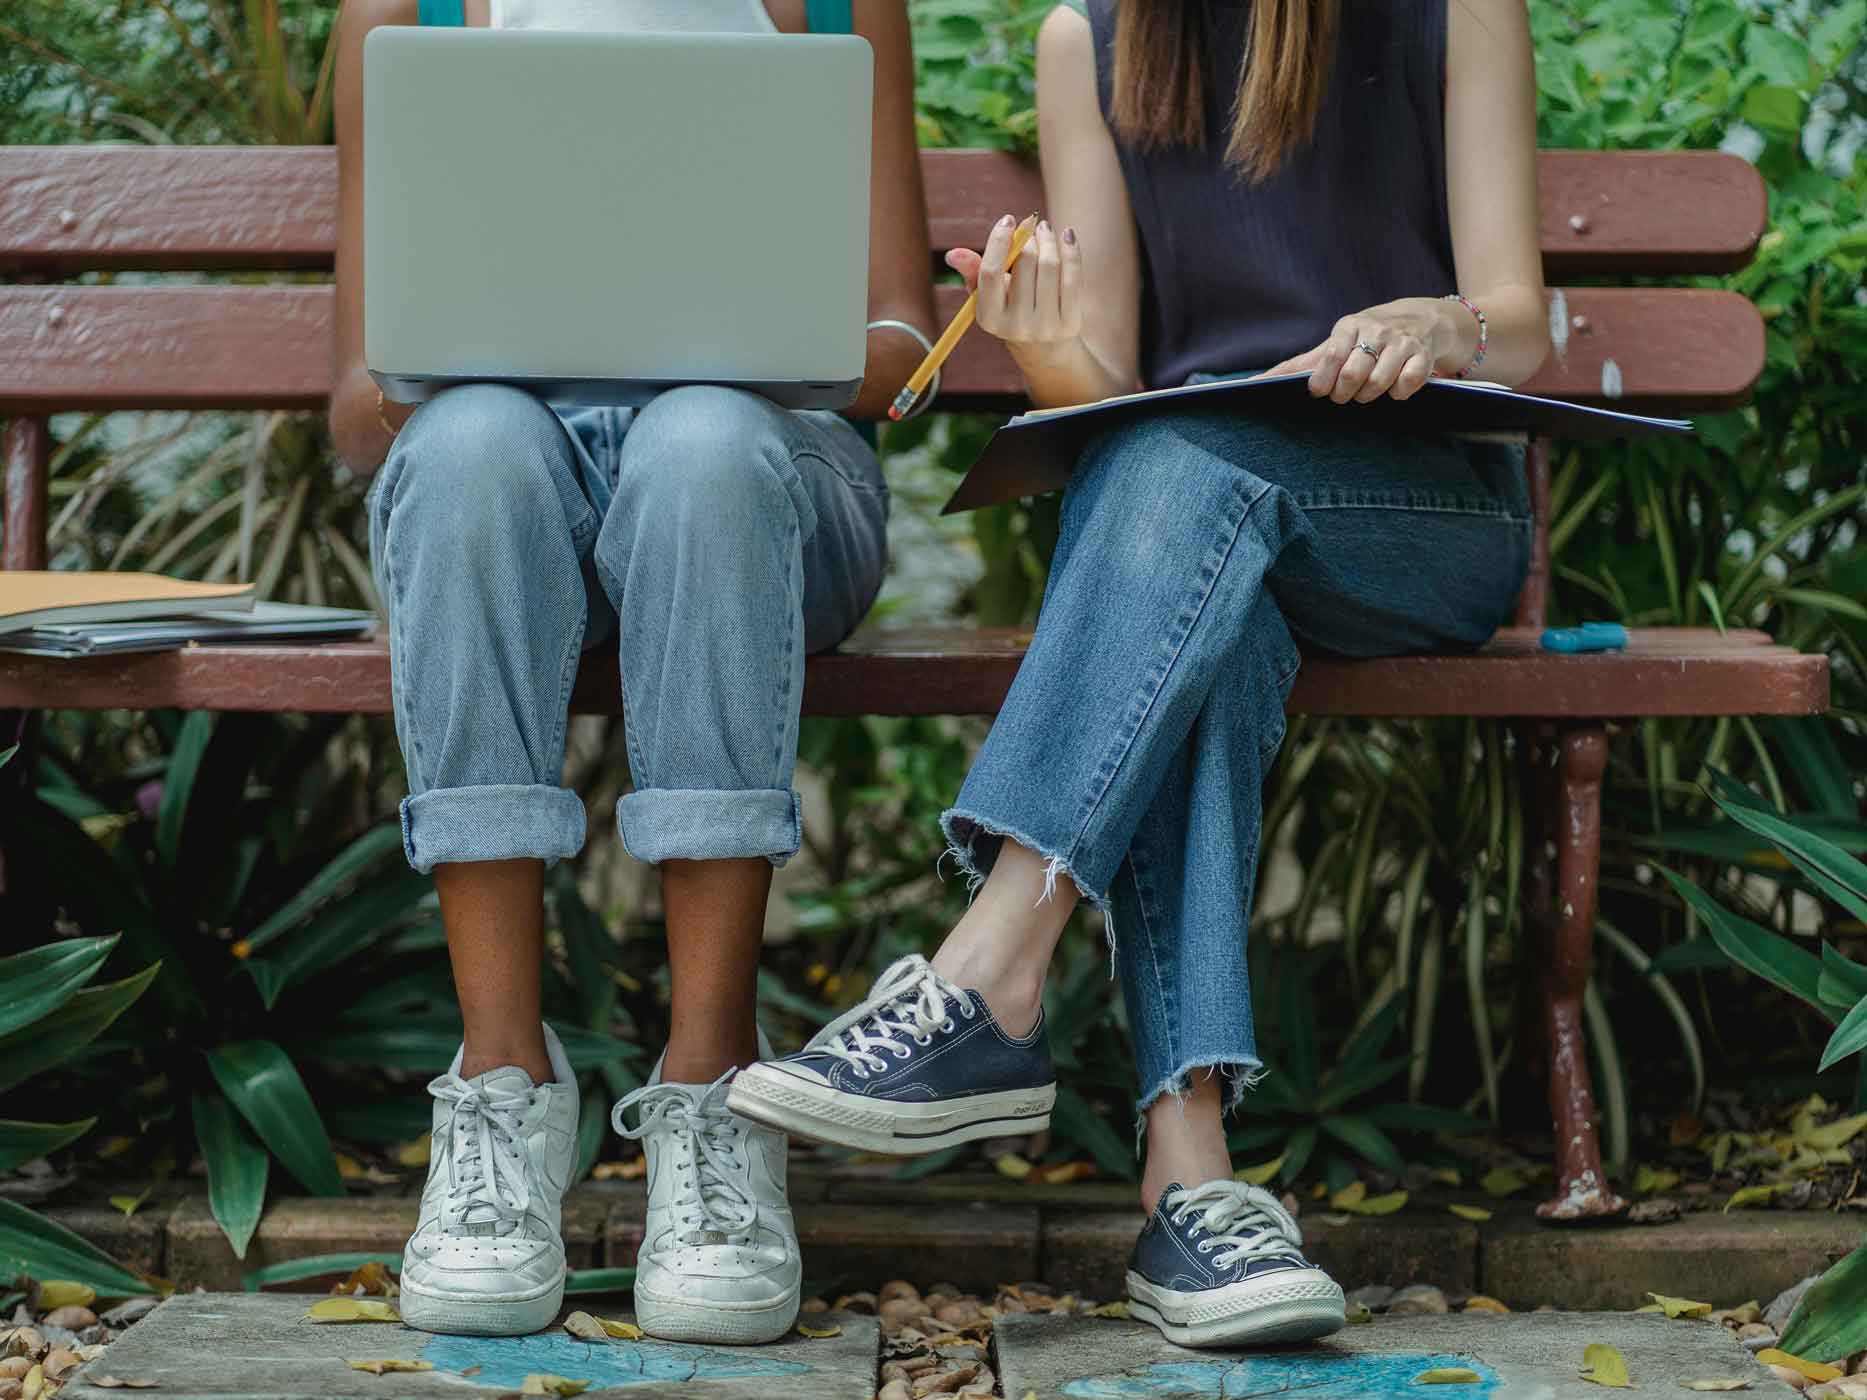 Zwei Frauen sitzen auf einer Bank und tragen Jeans, die die Knöchel zeigen